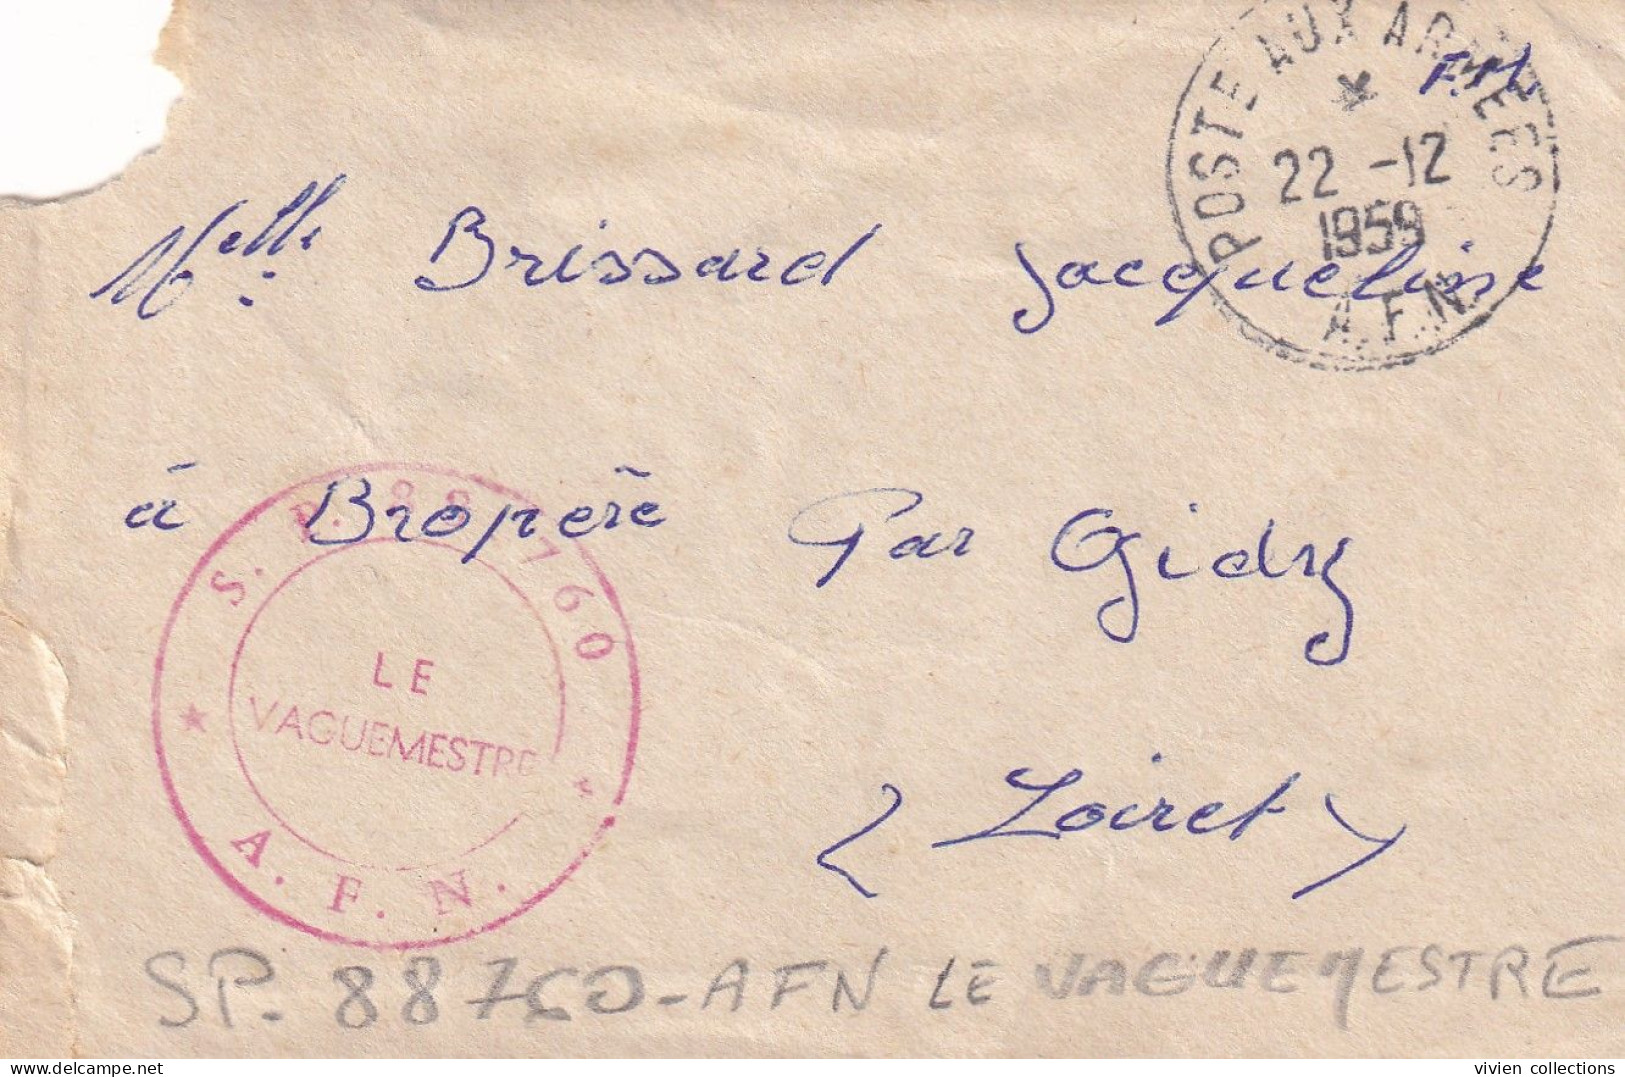 Guerre D'Algérie Tampon SP 88760 AFN Légion 1ere CC + Cachet Poste Aux Armées 1959 - Algerienkrieg